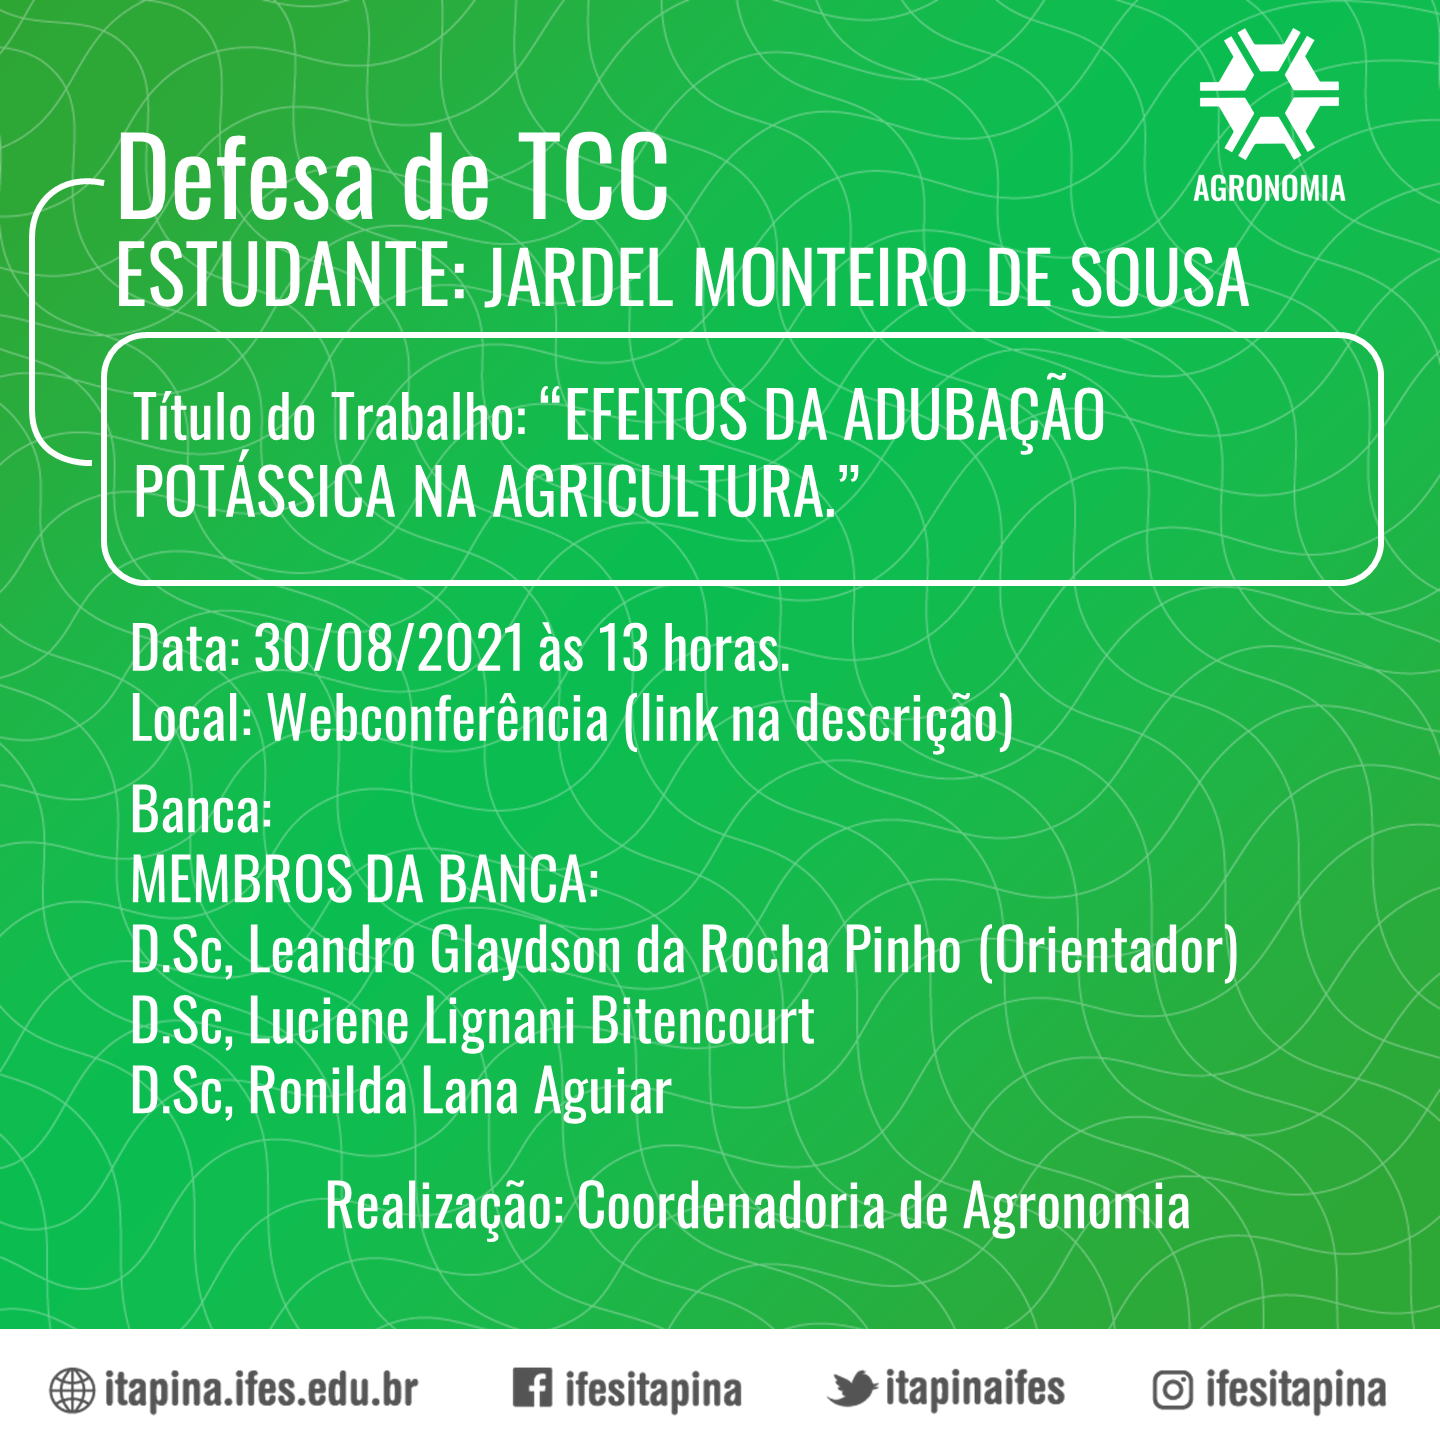 CCSE ITAPINA 107 2020 TCC AGRONOMIA JARDEL MONTEIRO DE SOUSA